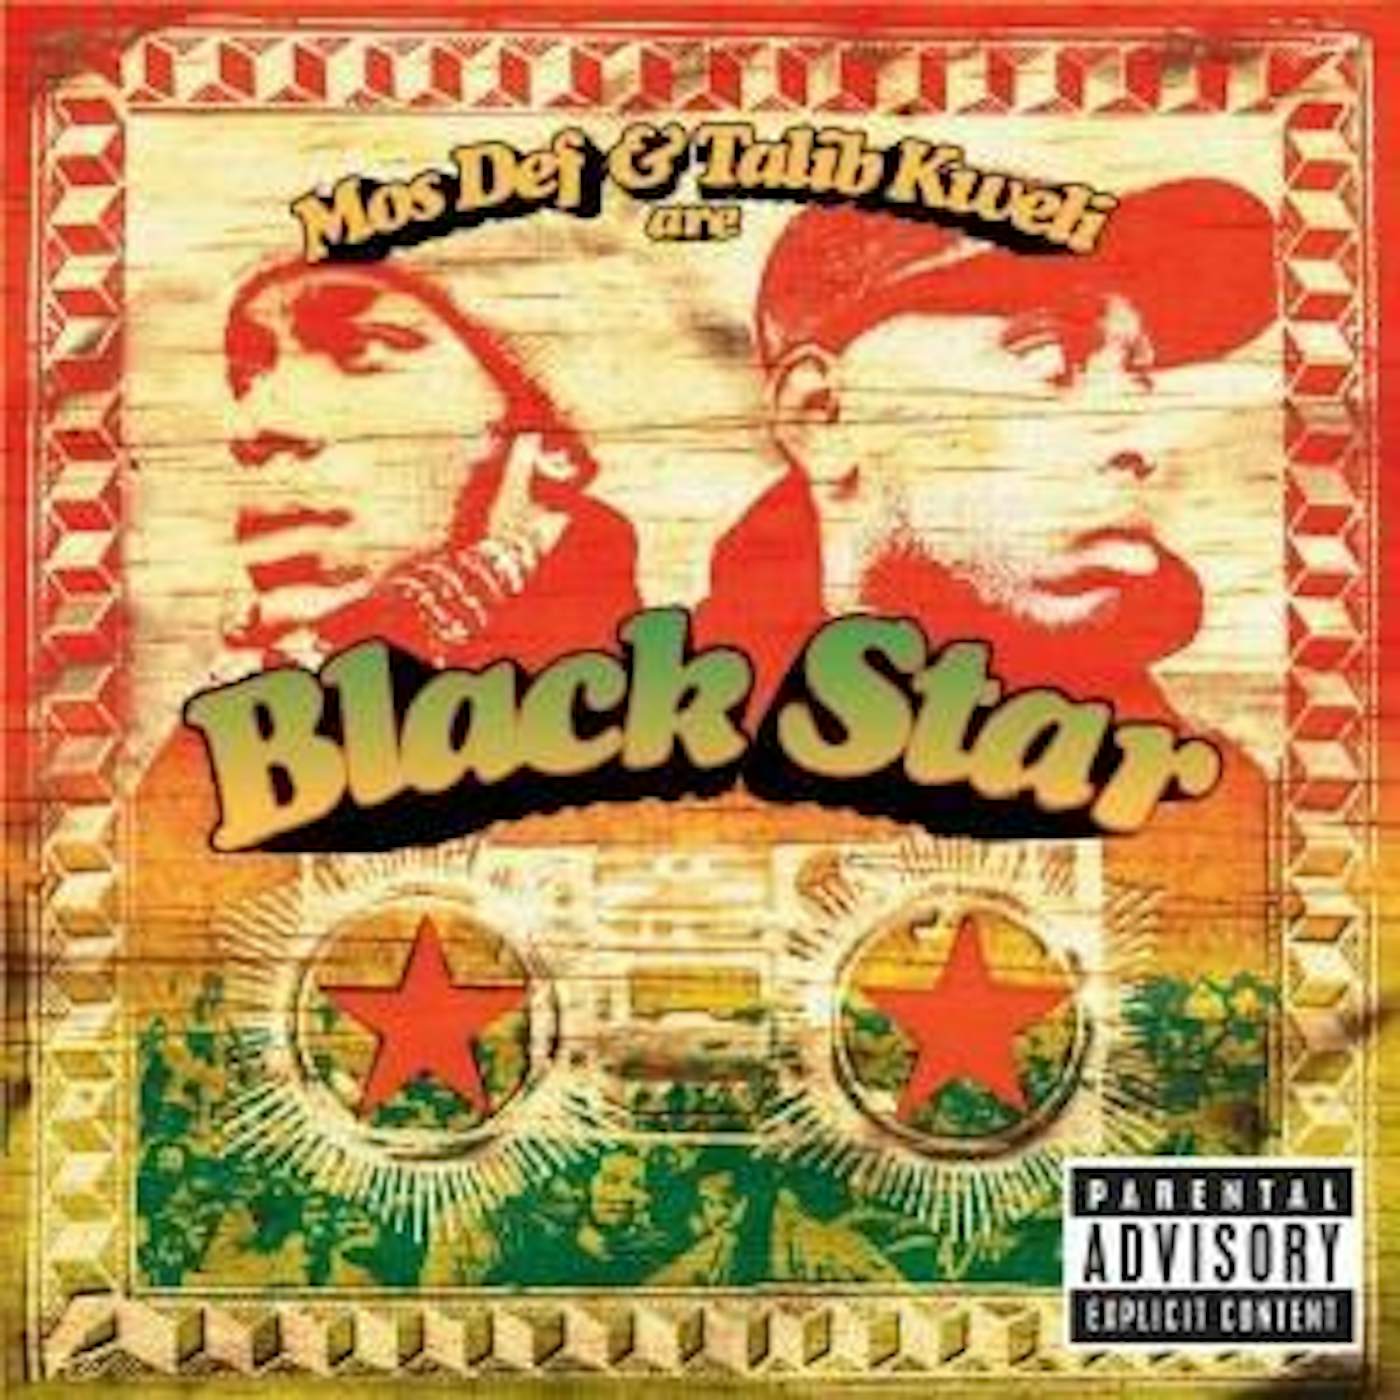 Mos Def & Talib Kweli are… Black Star (CD)